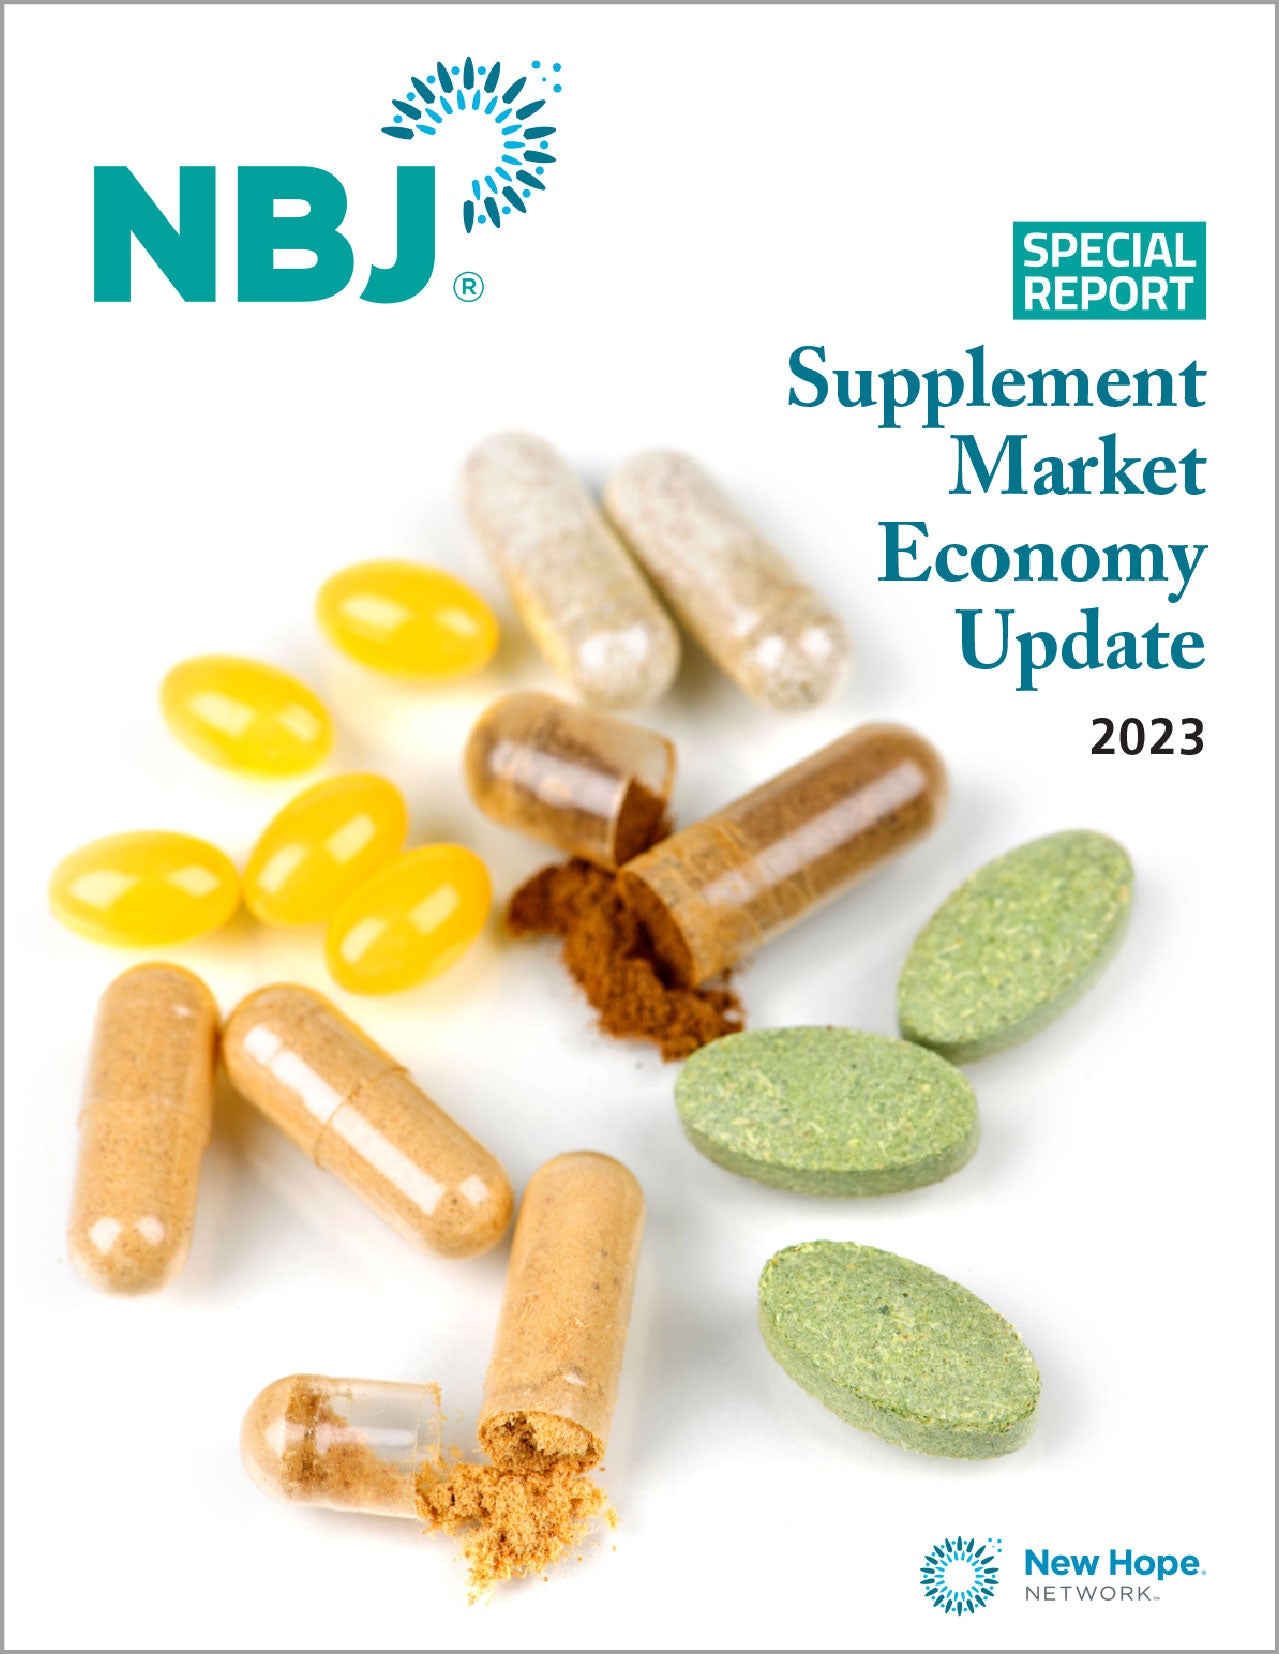 Special Report: Supplement Market Economy Update 2023